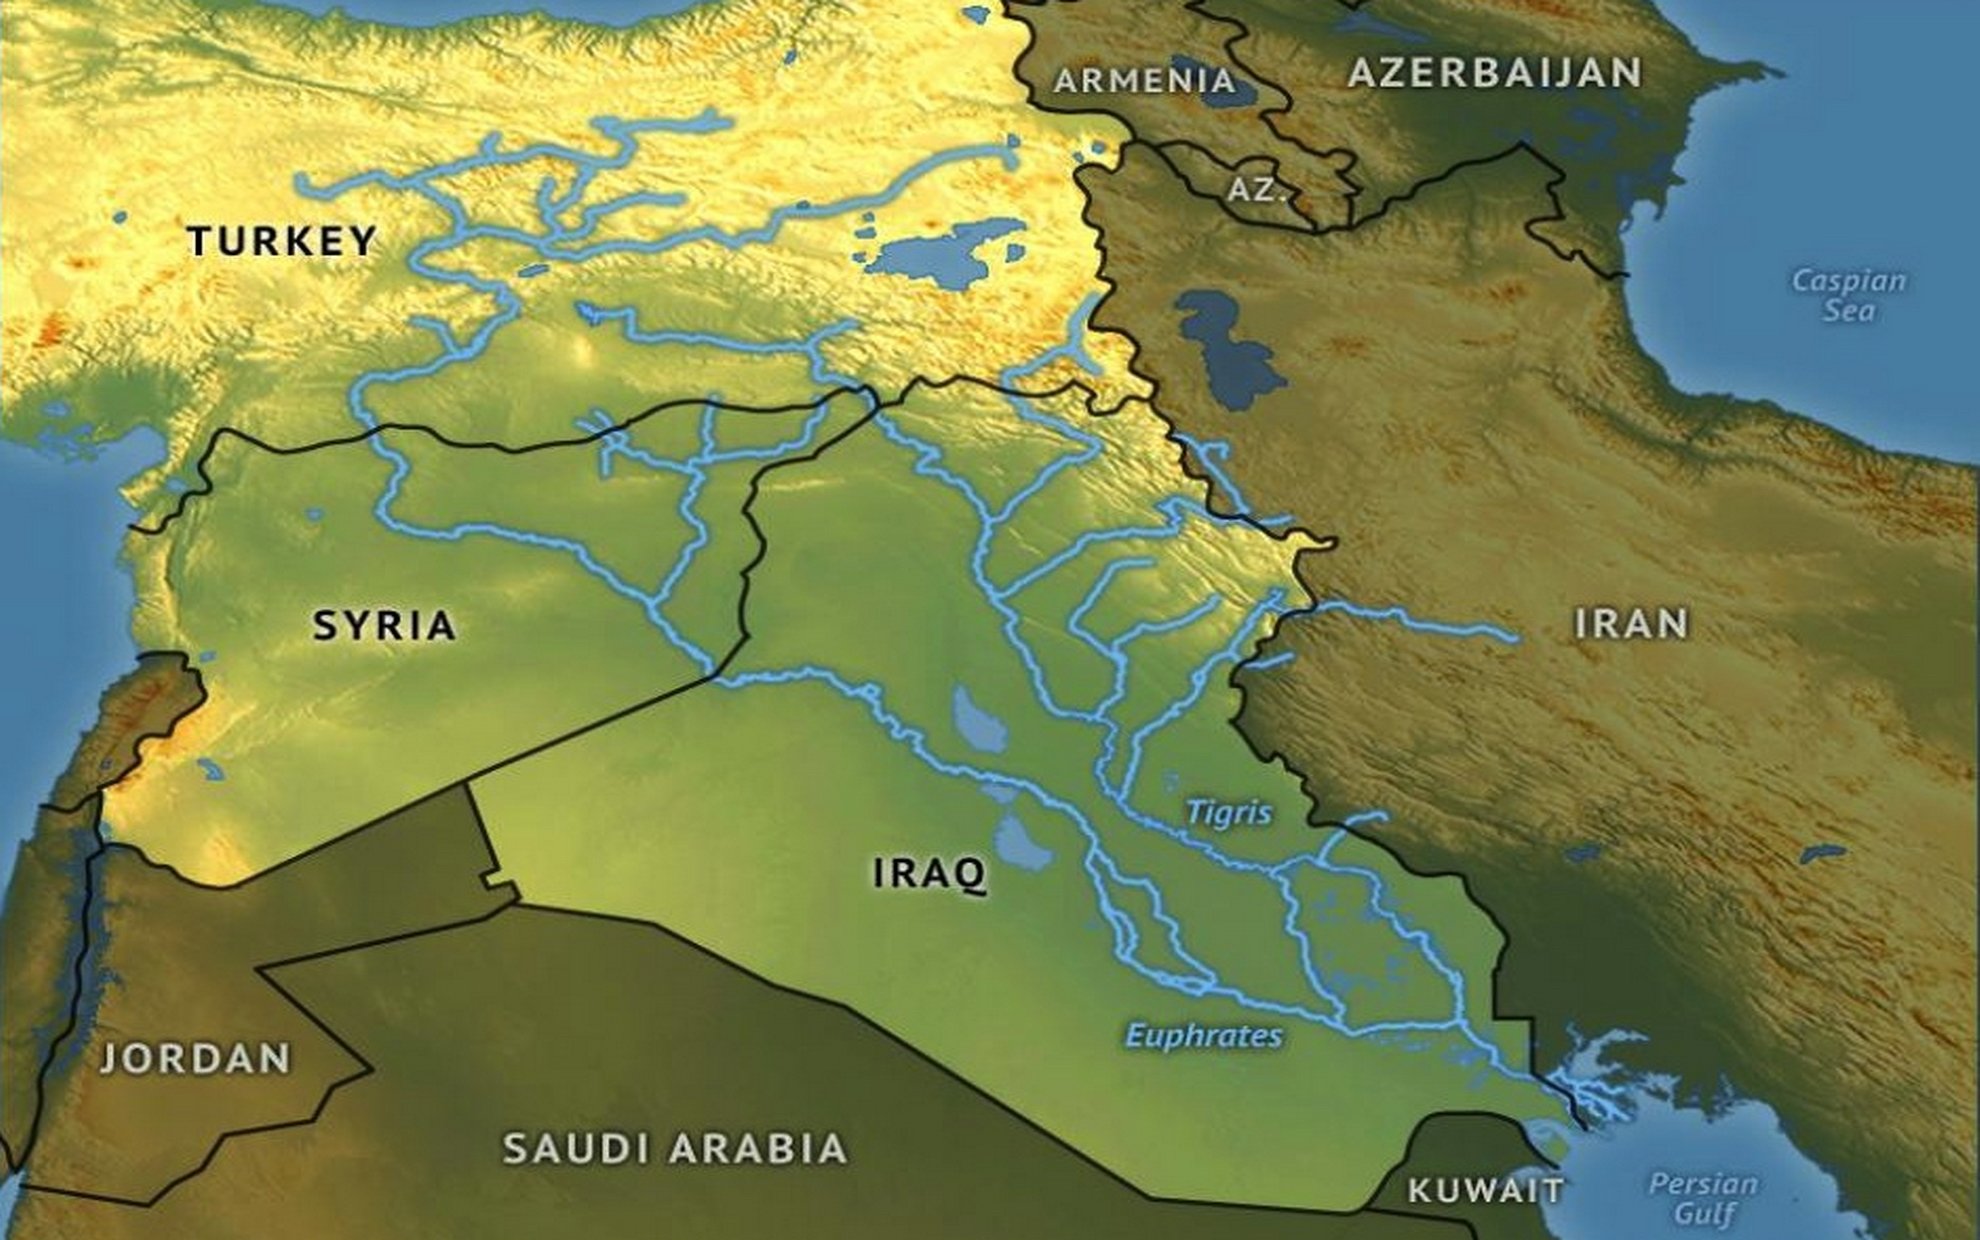 Реки тигр и евфрат в какой. Бассейн рек тигр и Евфрат. Река Евфрат на карте. Реки Тибр и Евфрат.